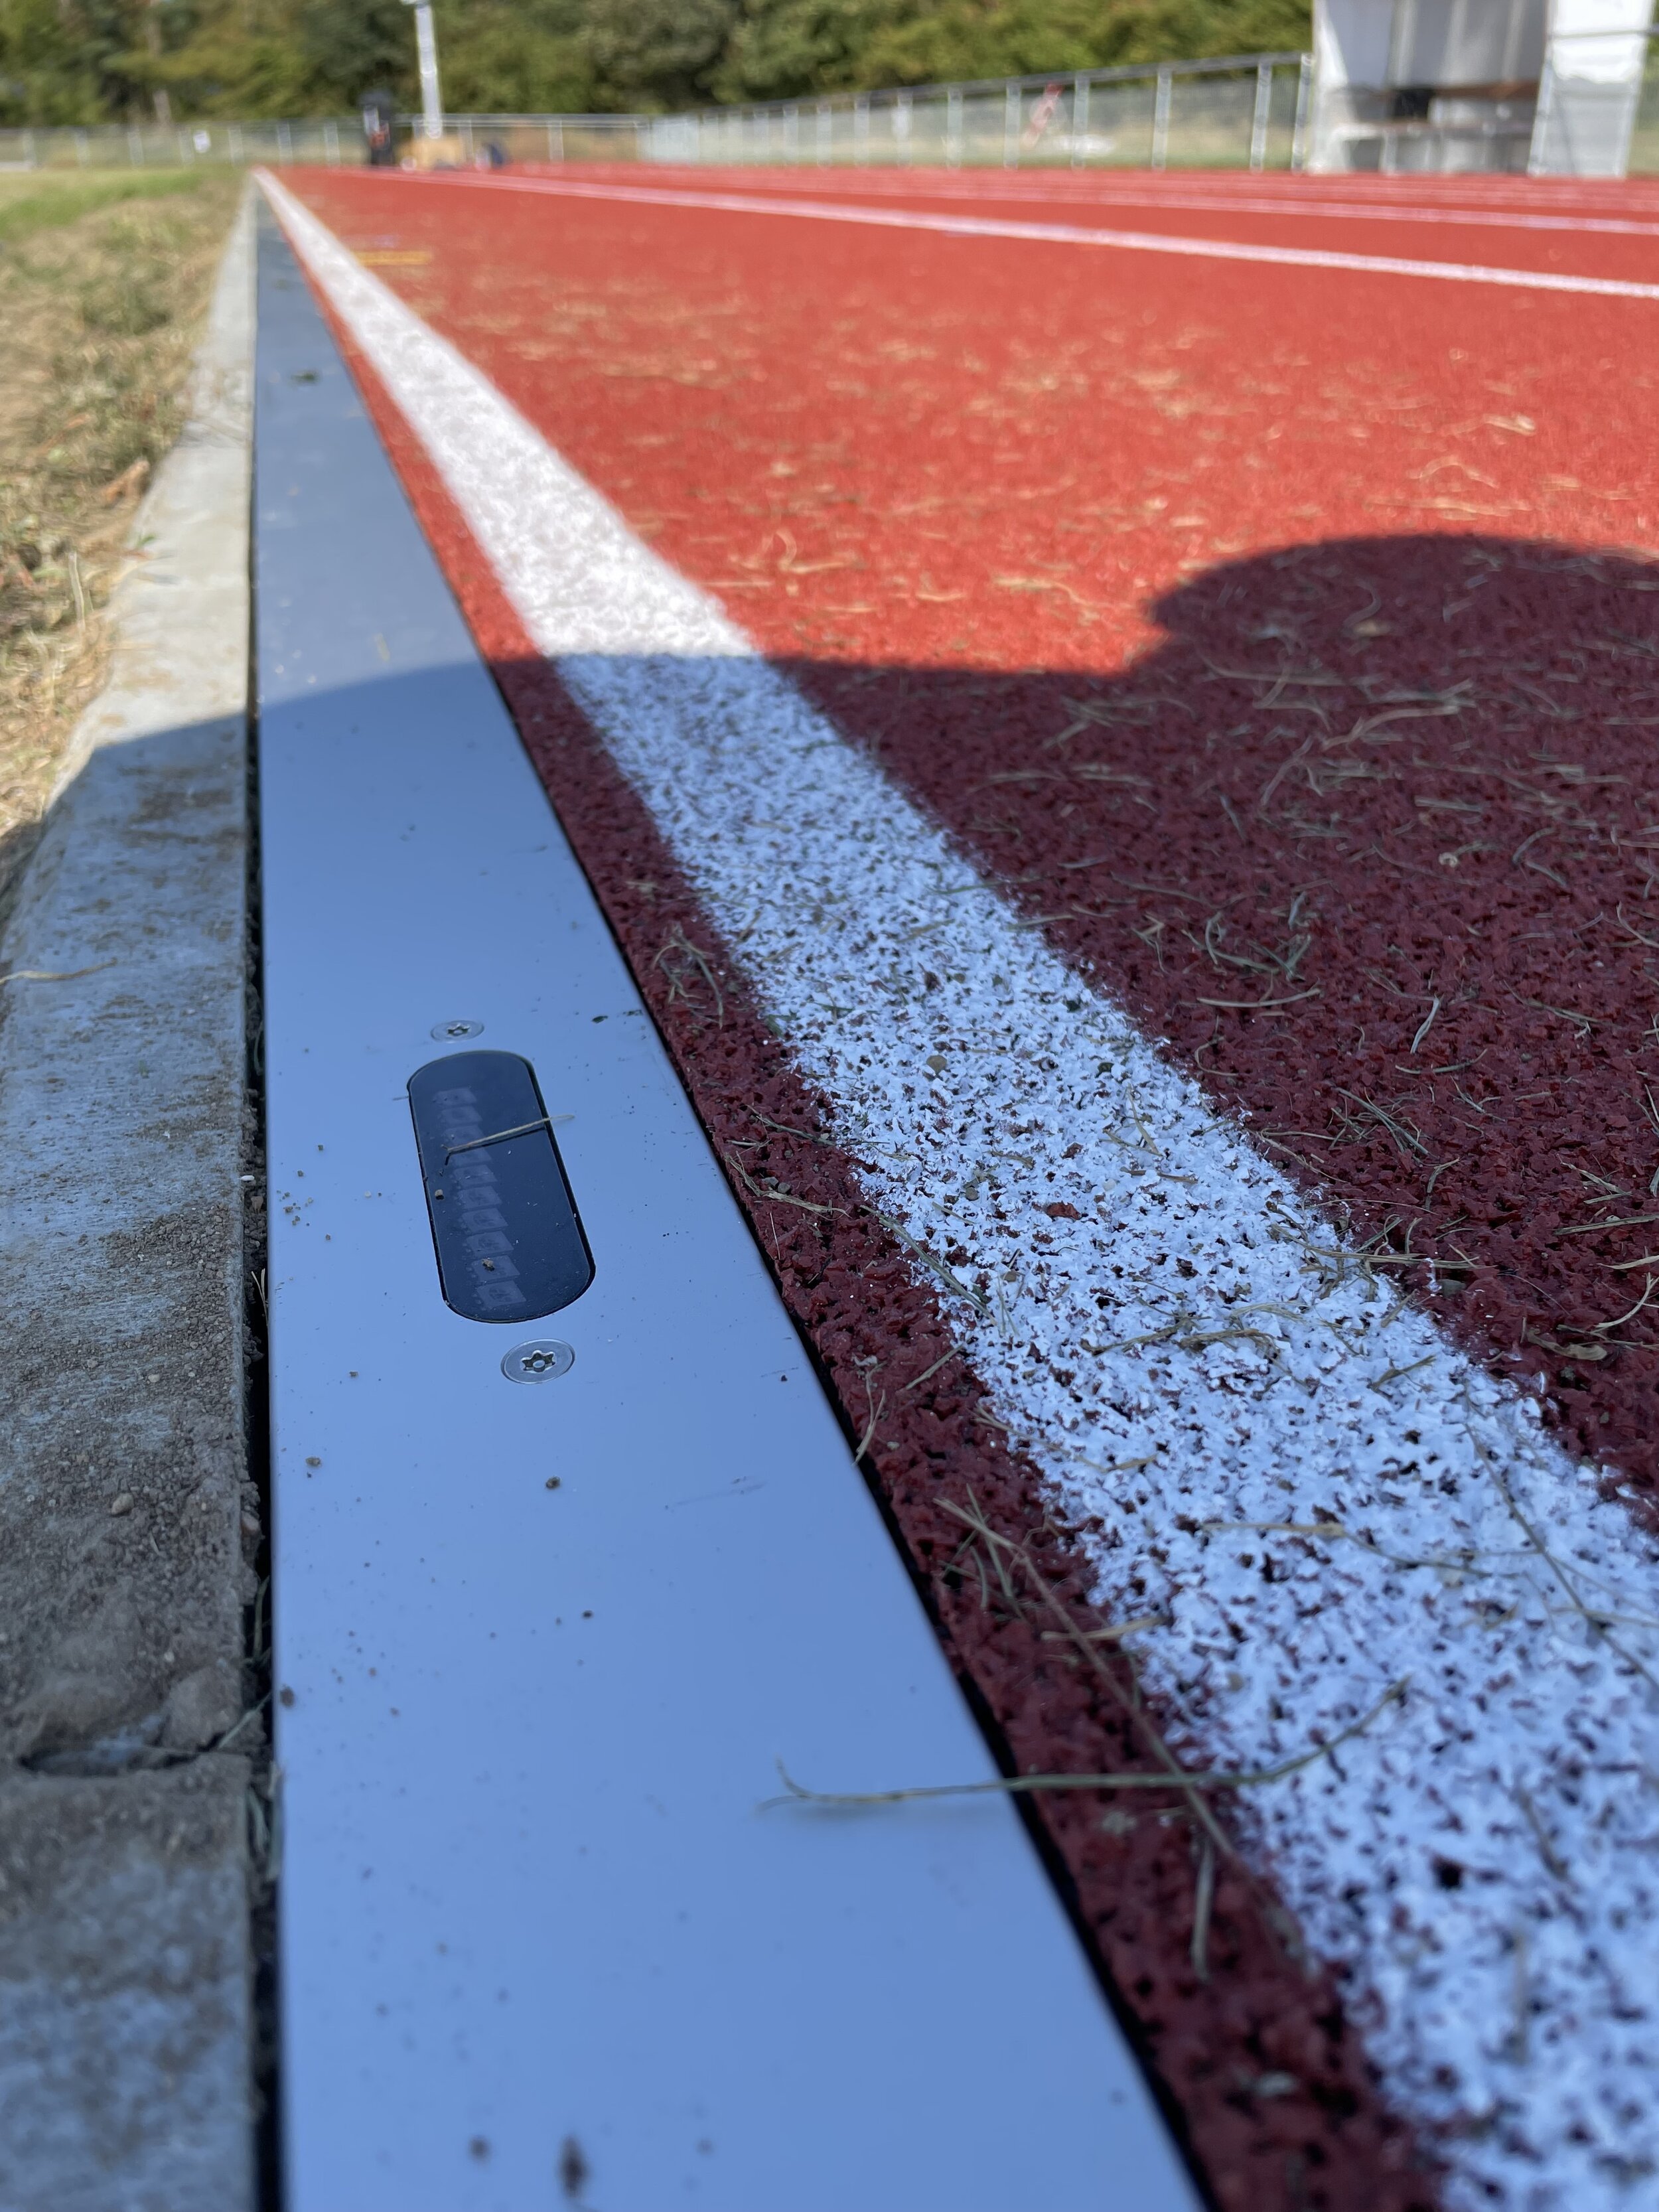 Running Light installed in athletics track